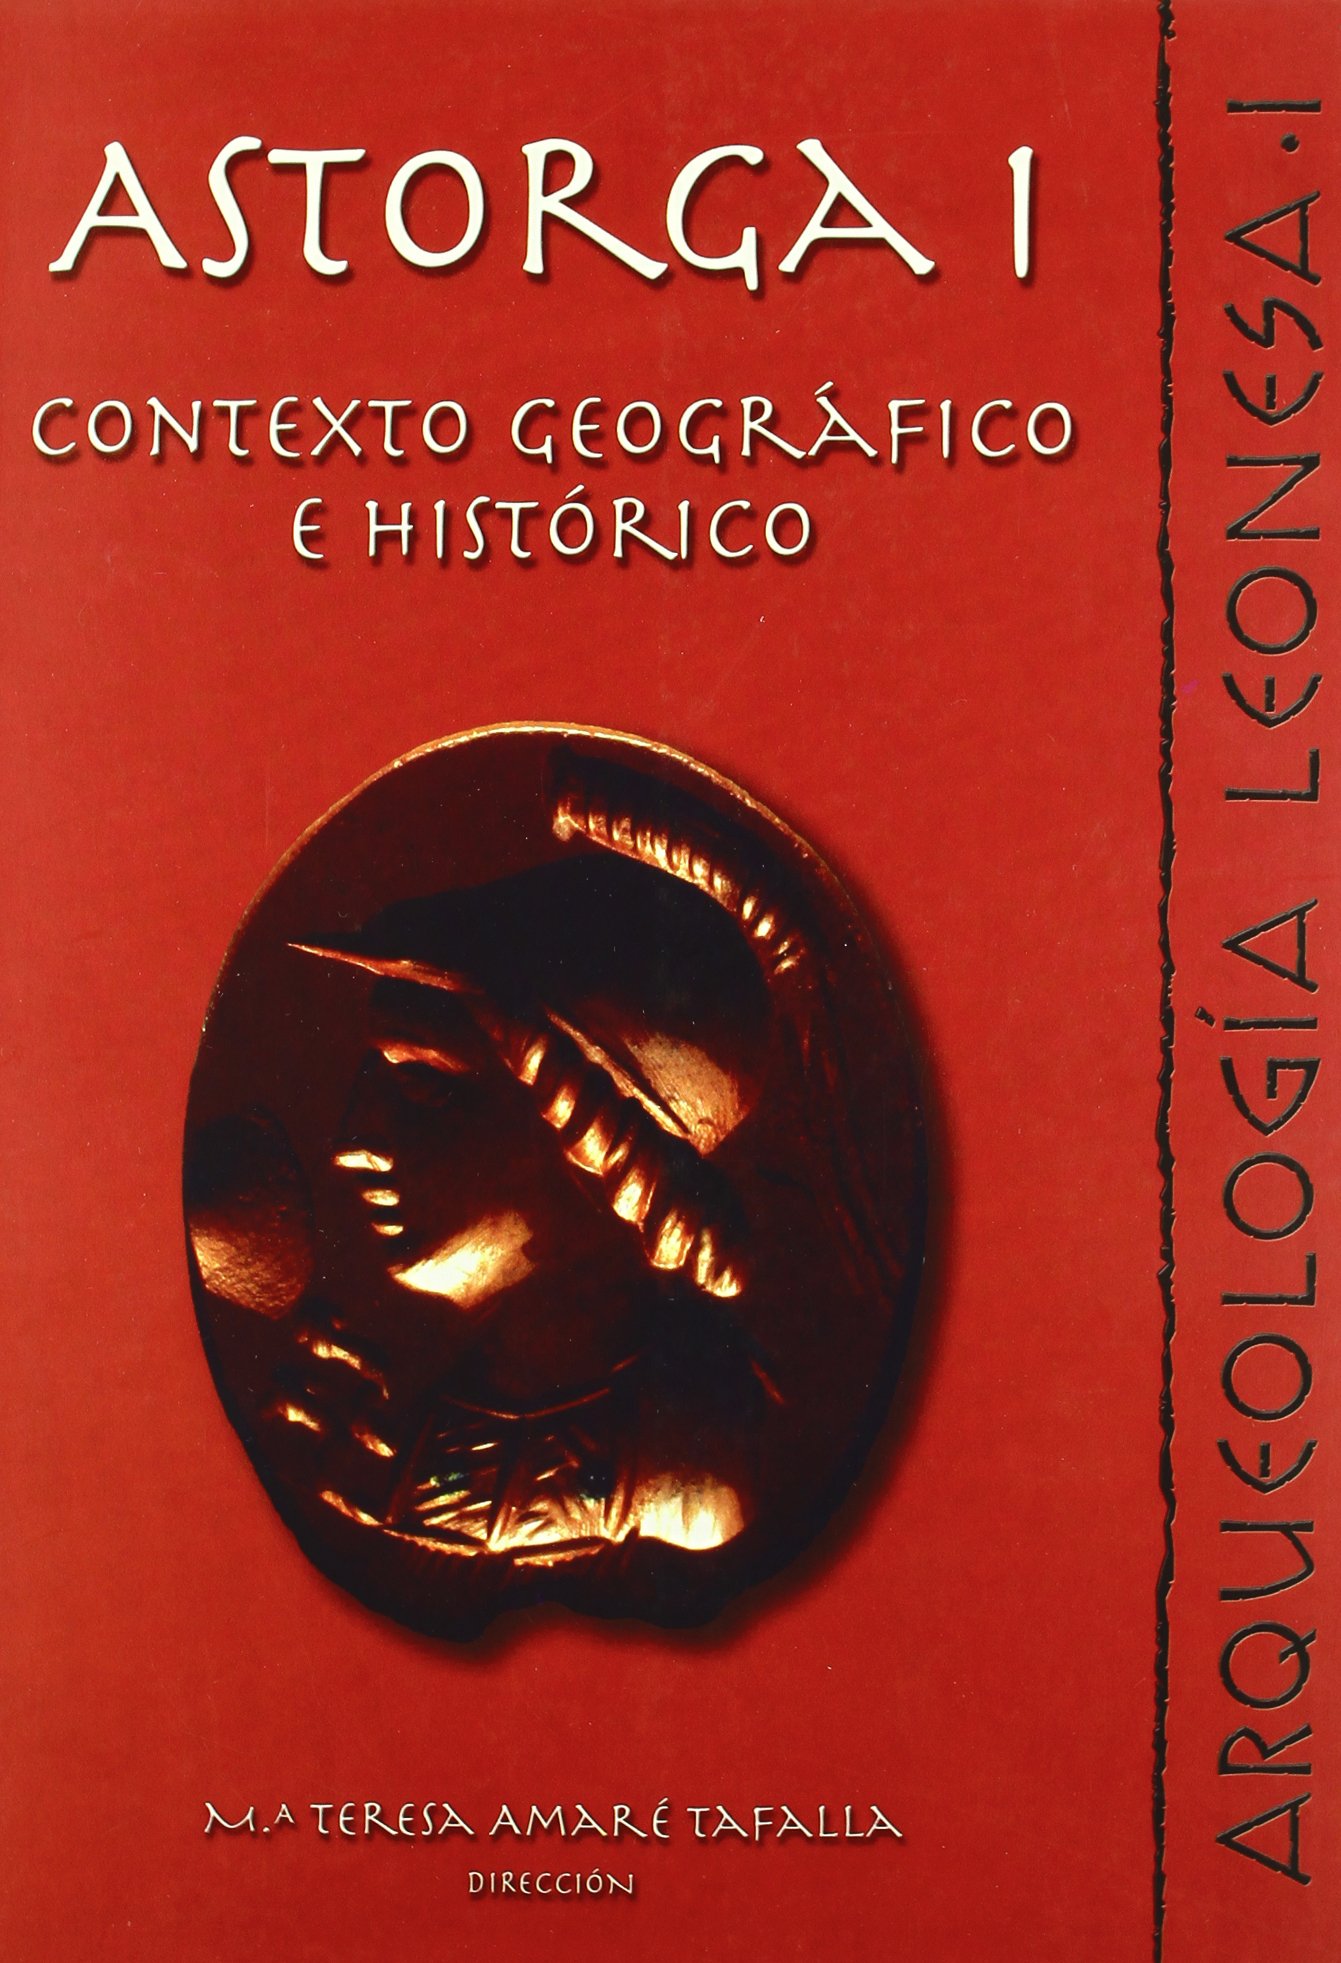 Imagen de portada del libro Astorga